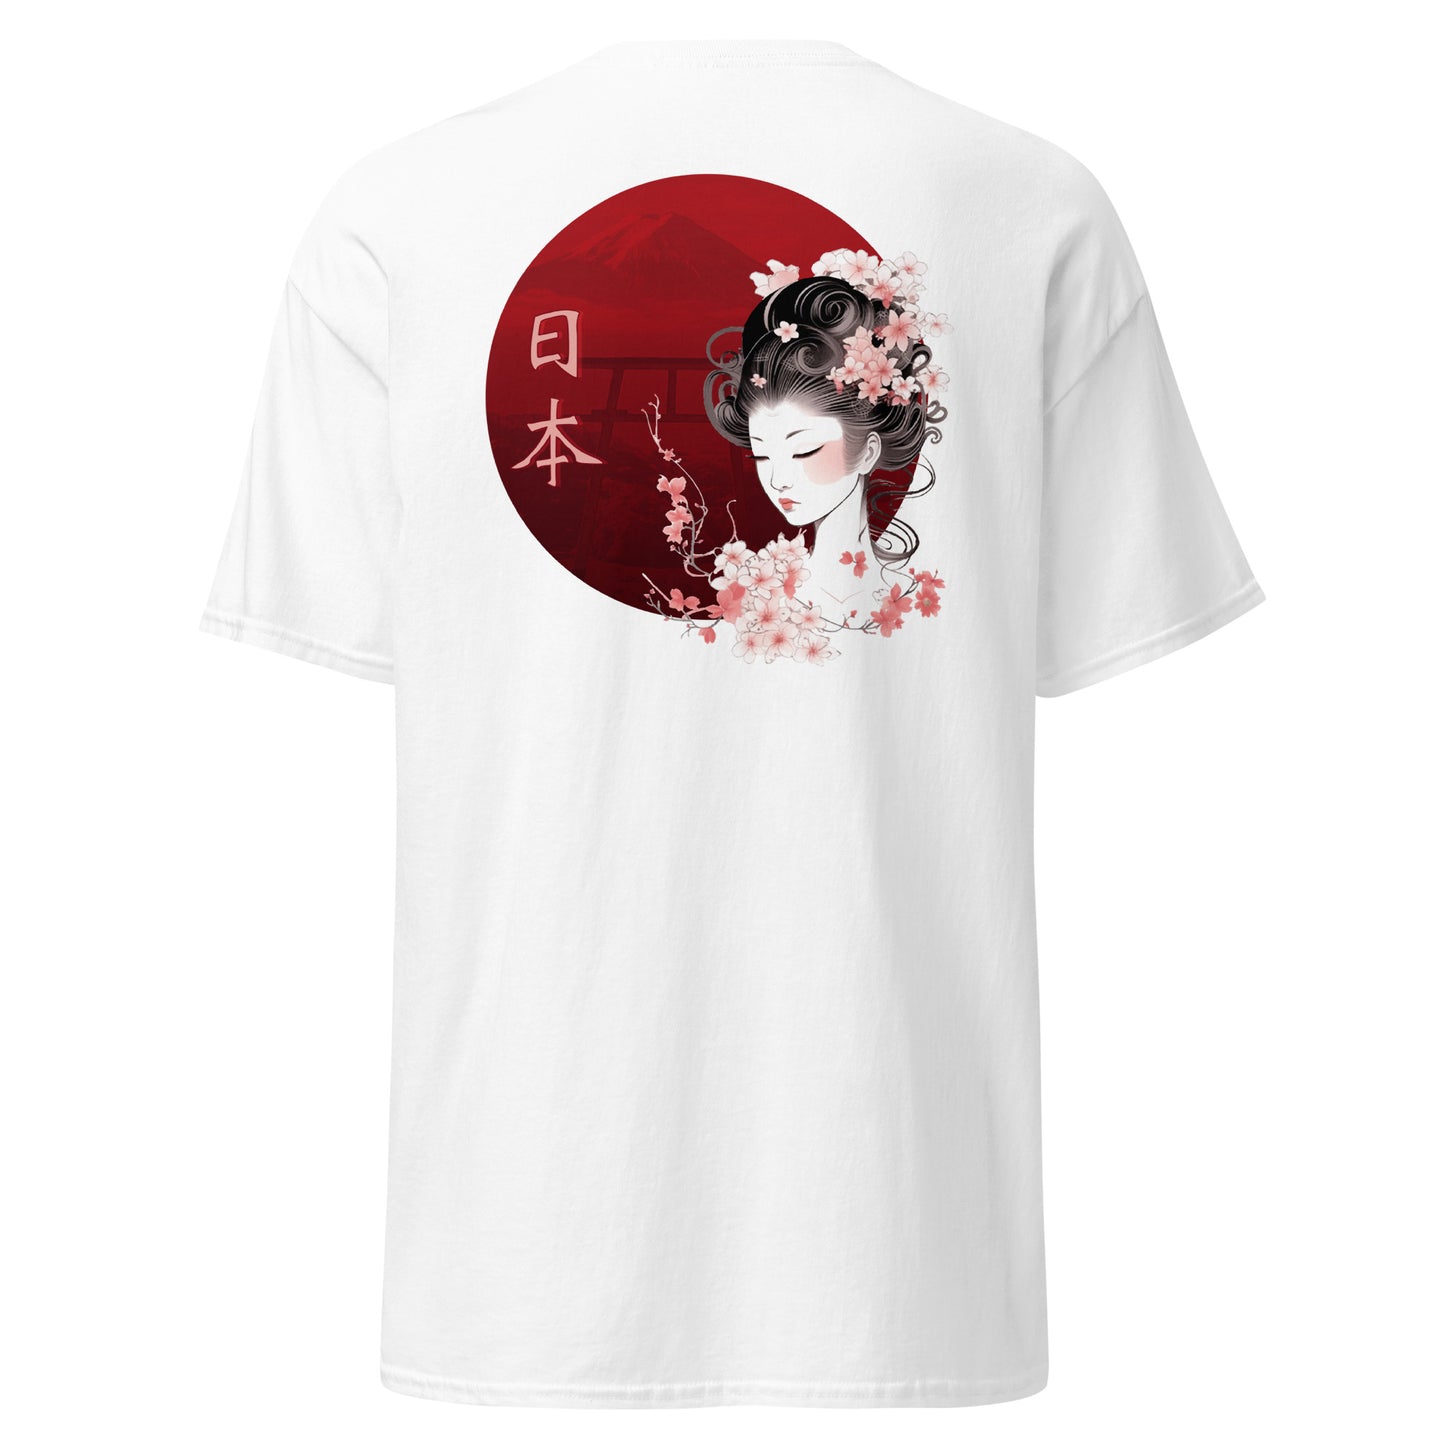 桜・芸者- メンズ Tシャツ 綿100% - UNIWARI 